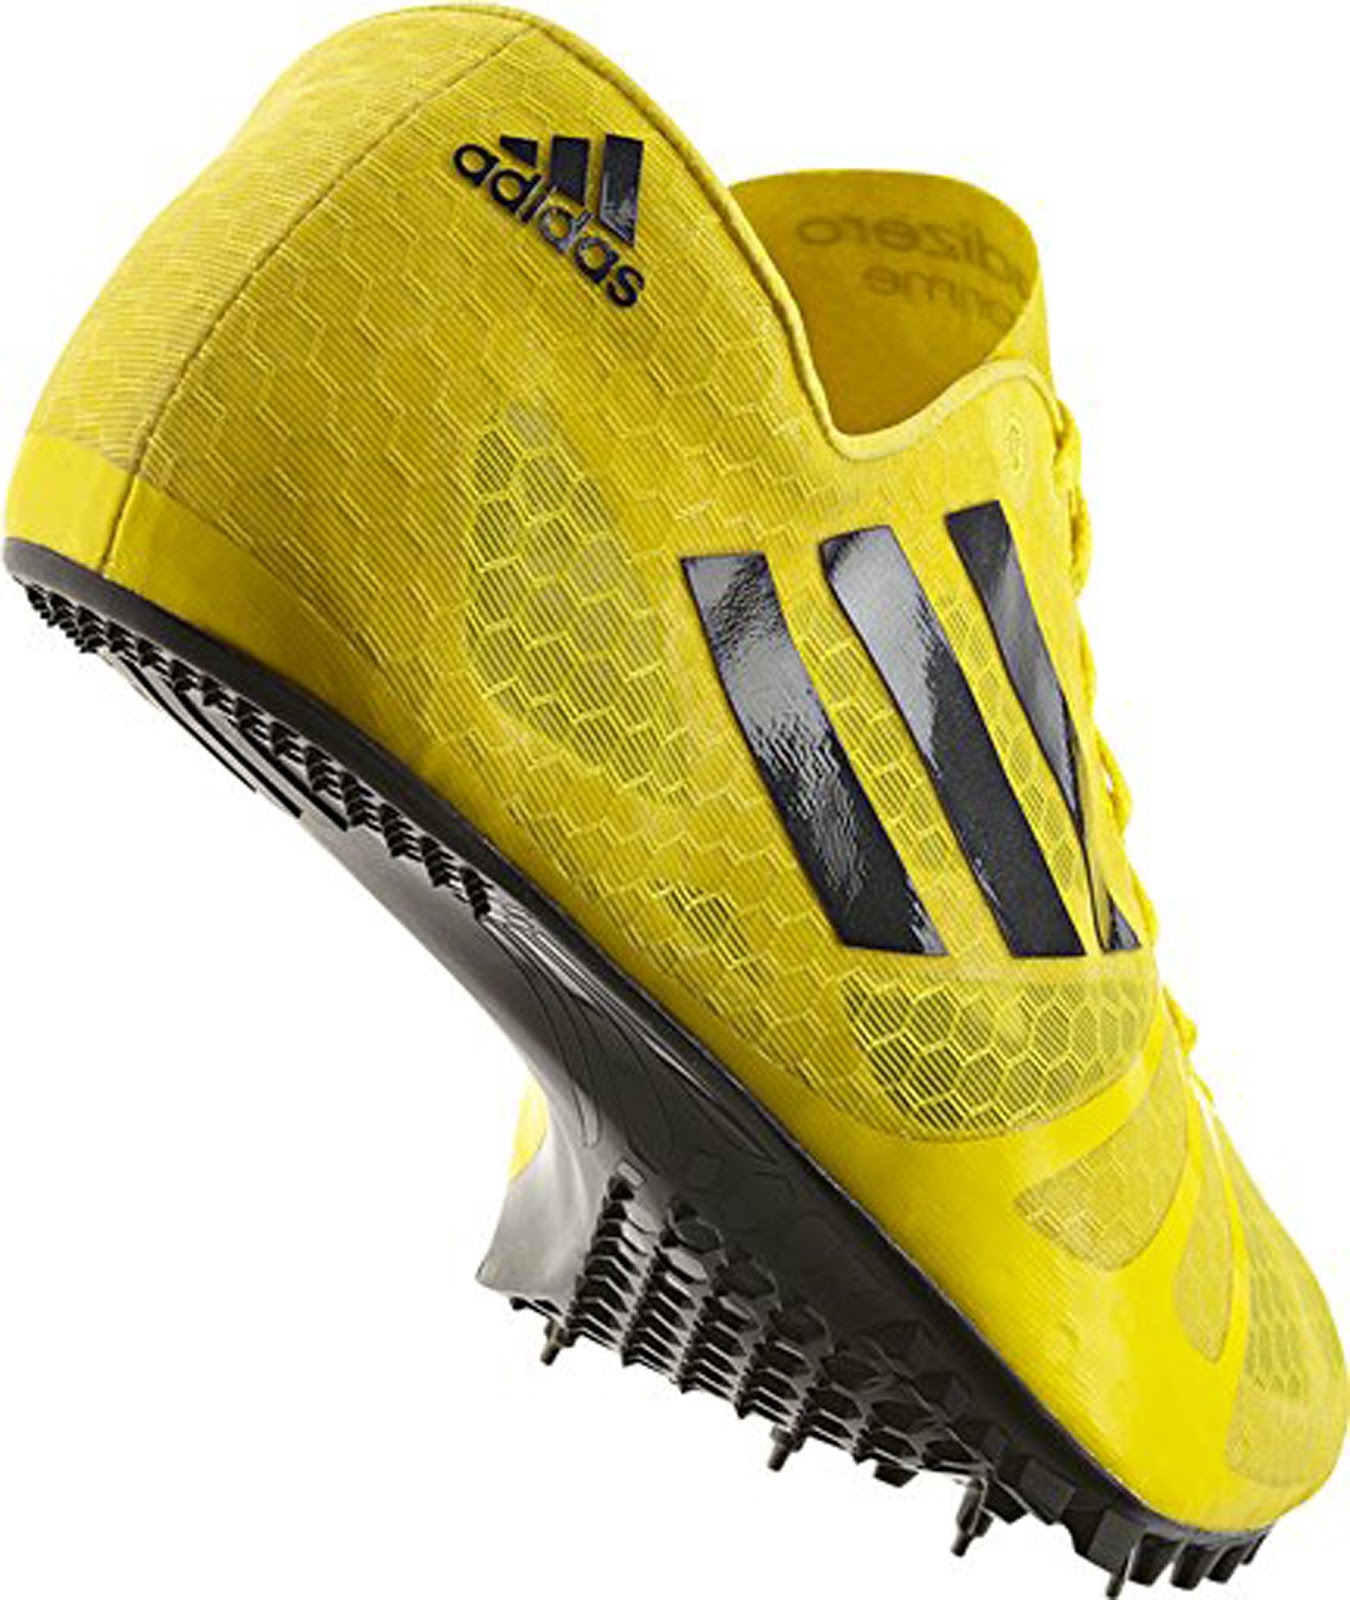 Running Shoe Guru: adidas track and field spikes 2013 adizero prime